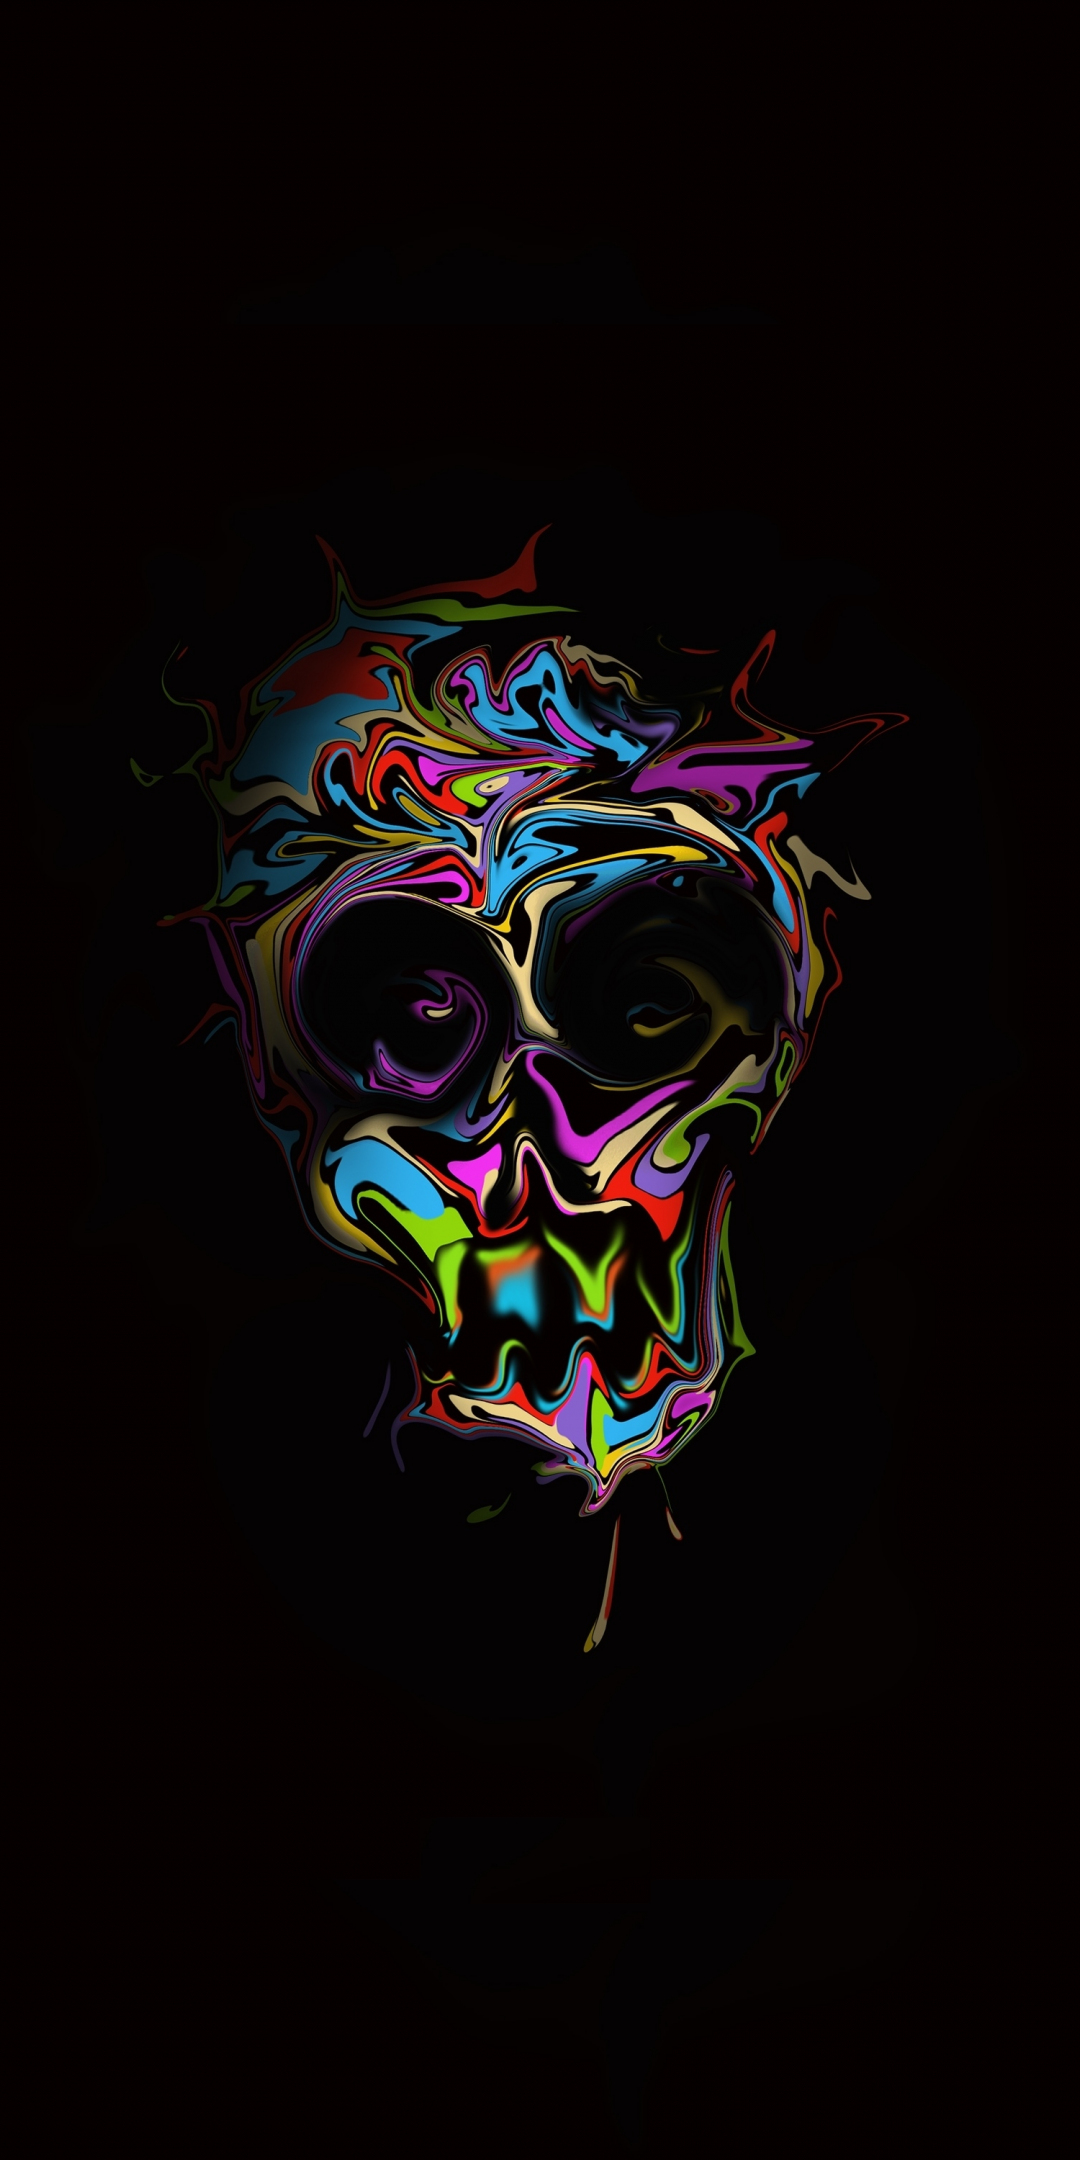 Glitch, colorful skull, dark, artwork, 1080x2160 wallpaper